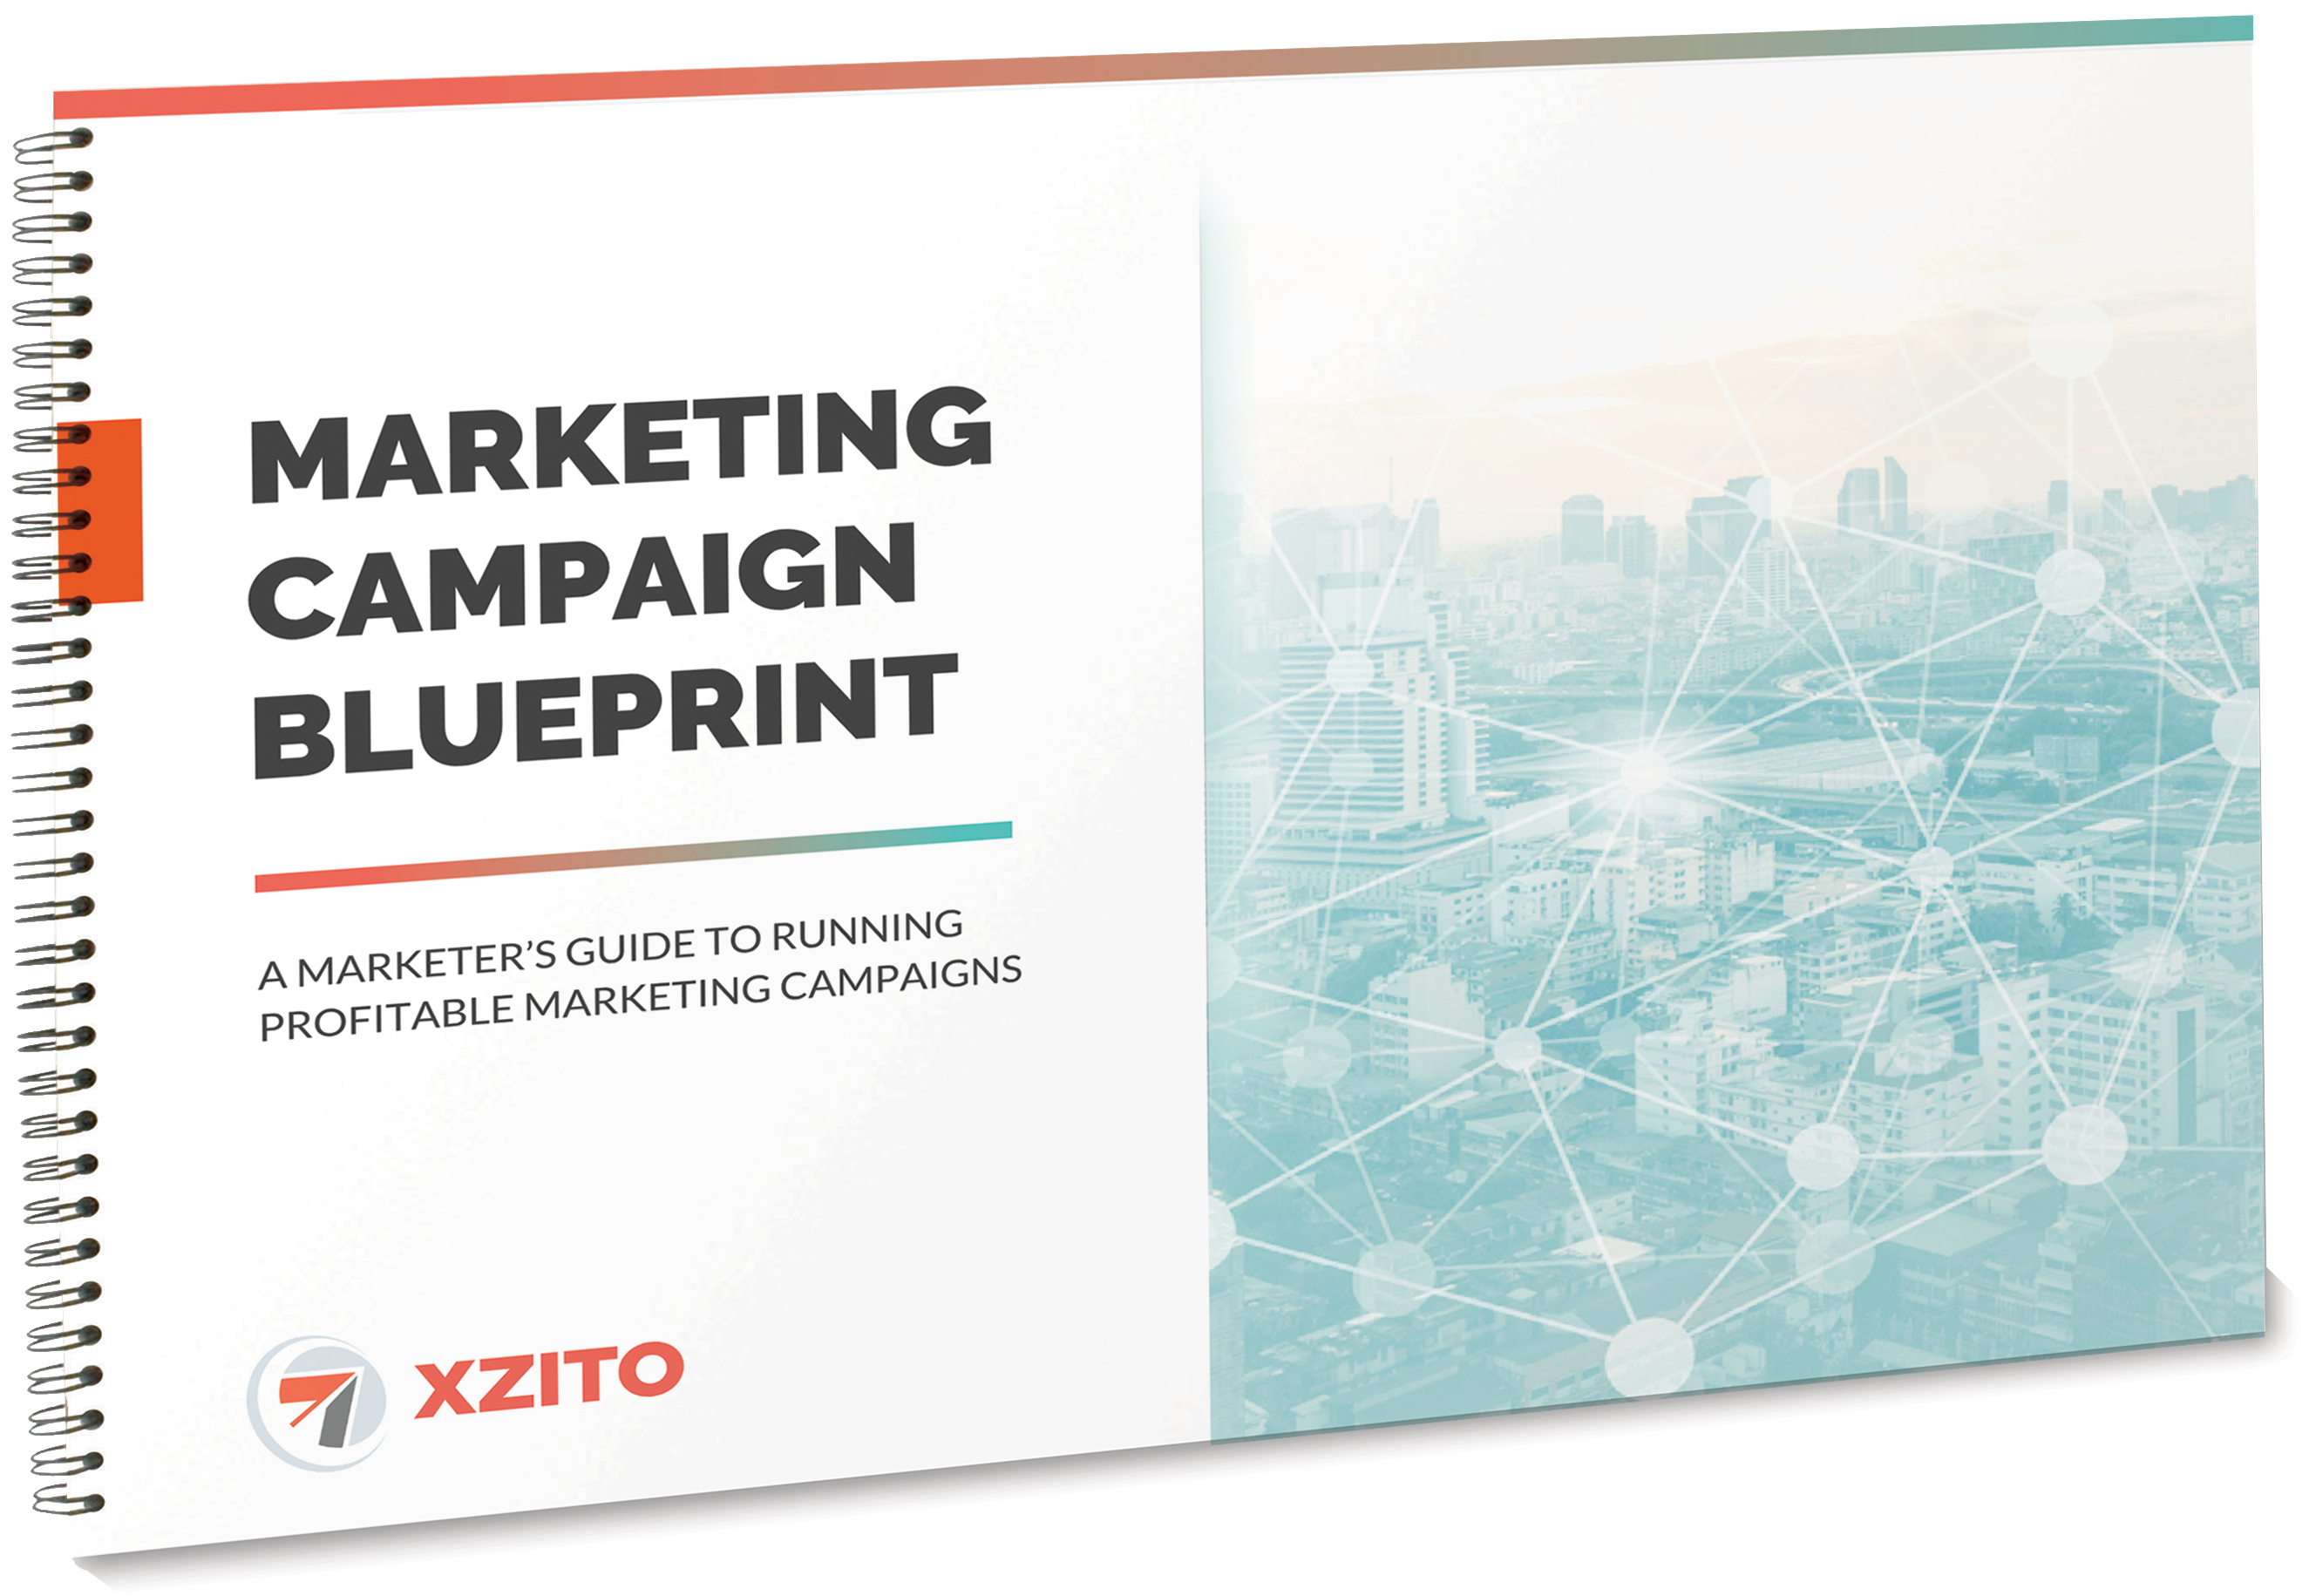 Marketing-Campaign-Blueprint-LP-image-2.png